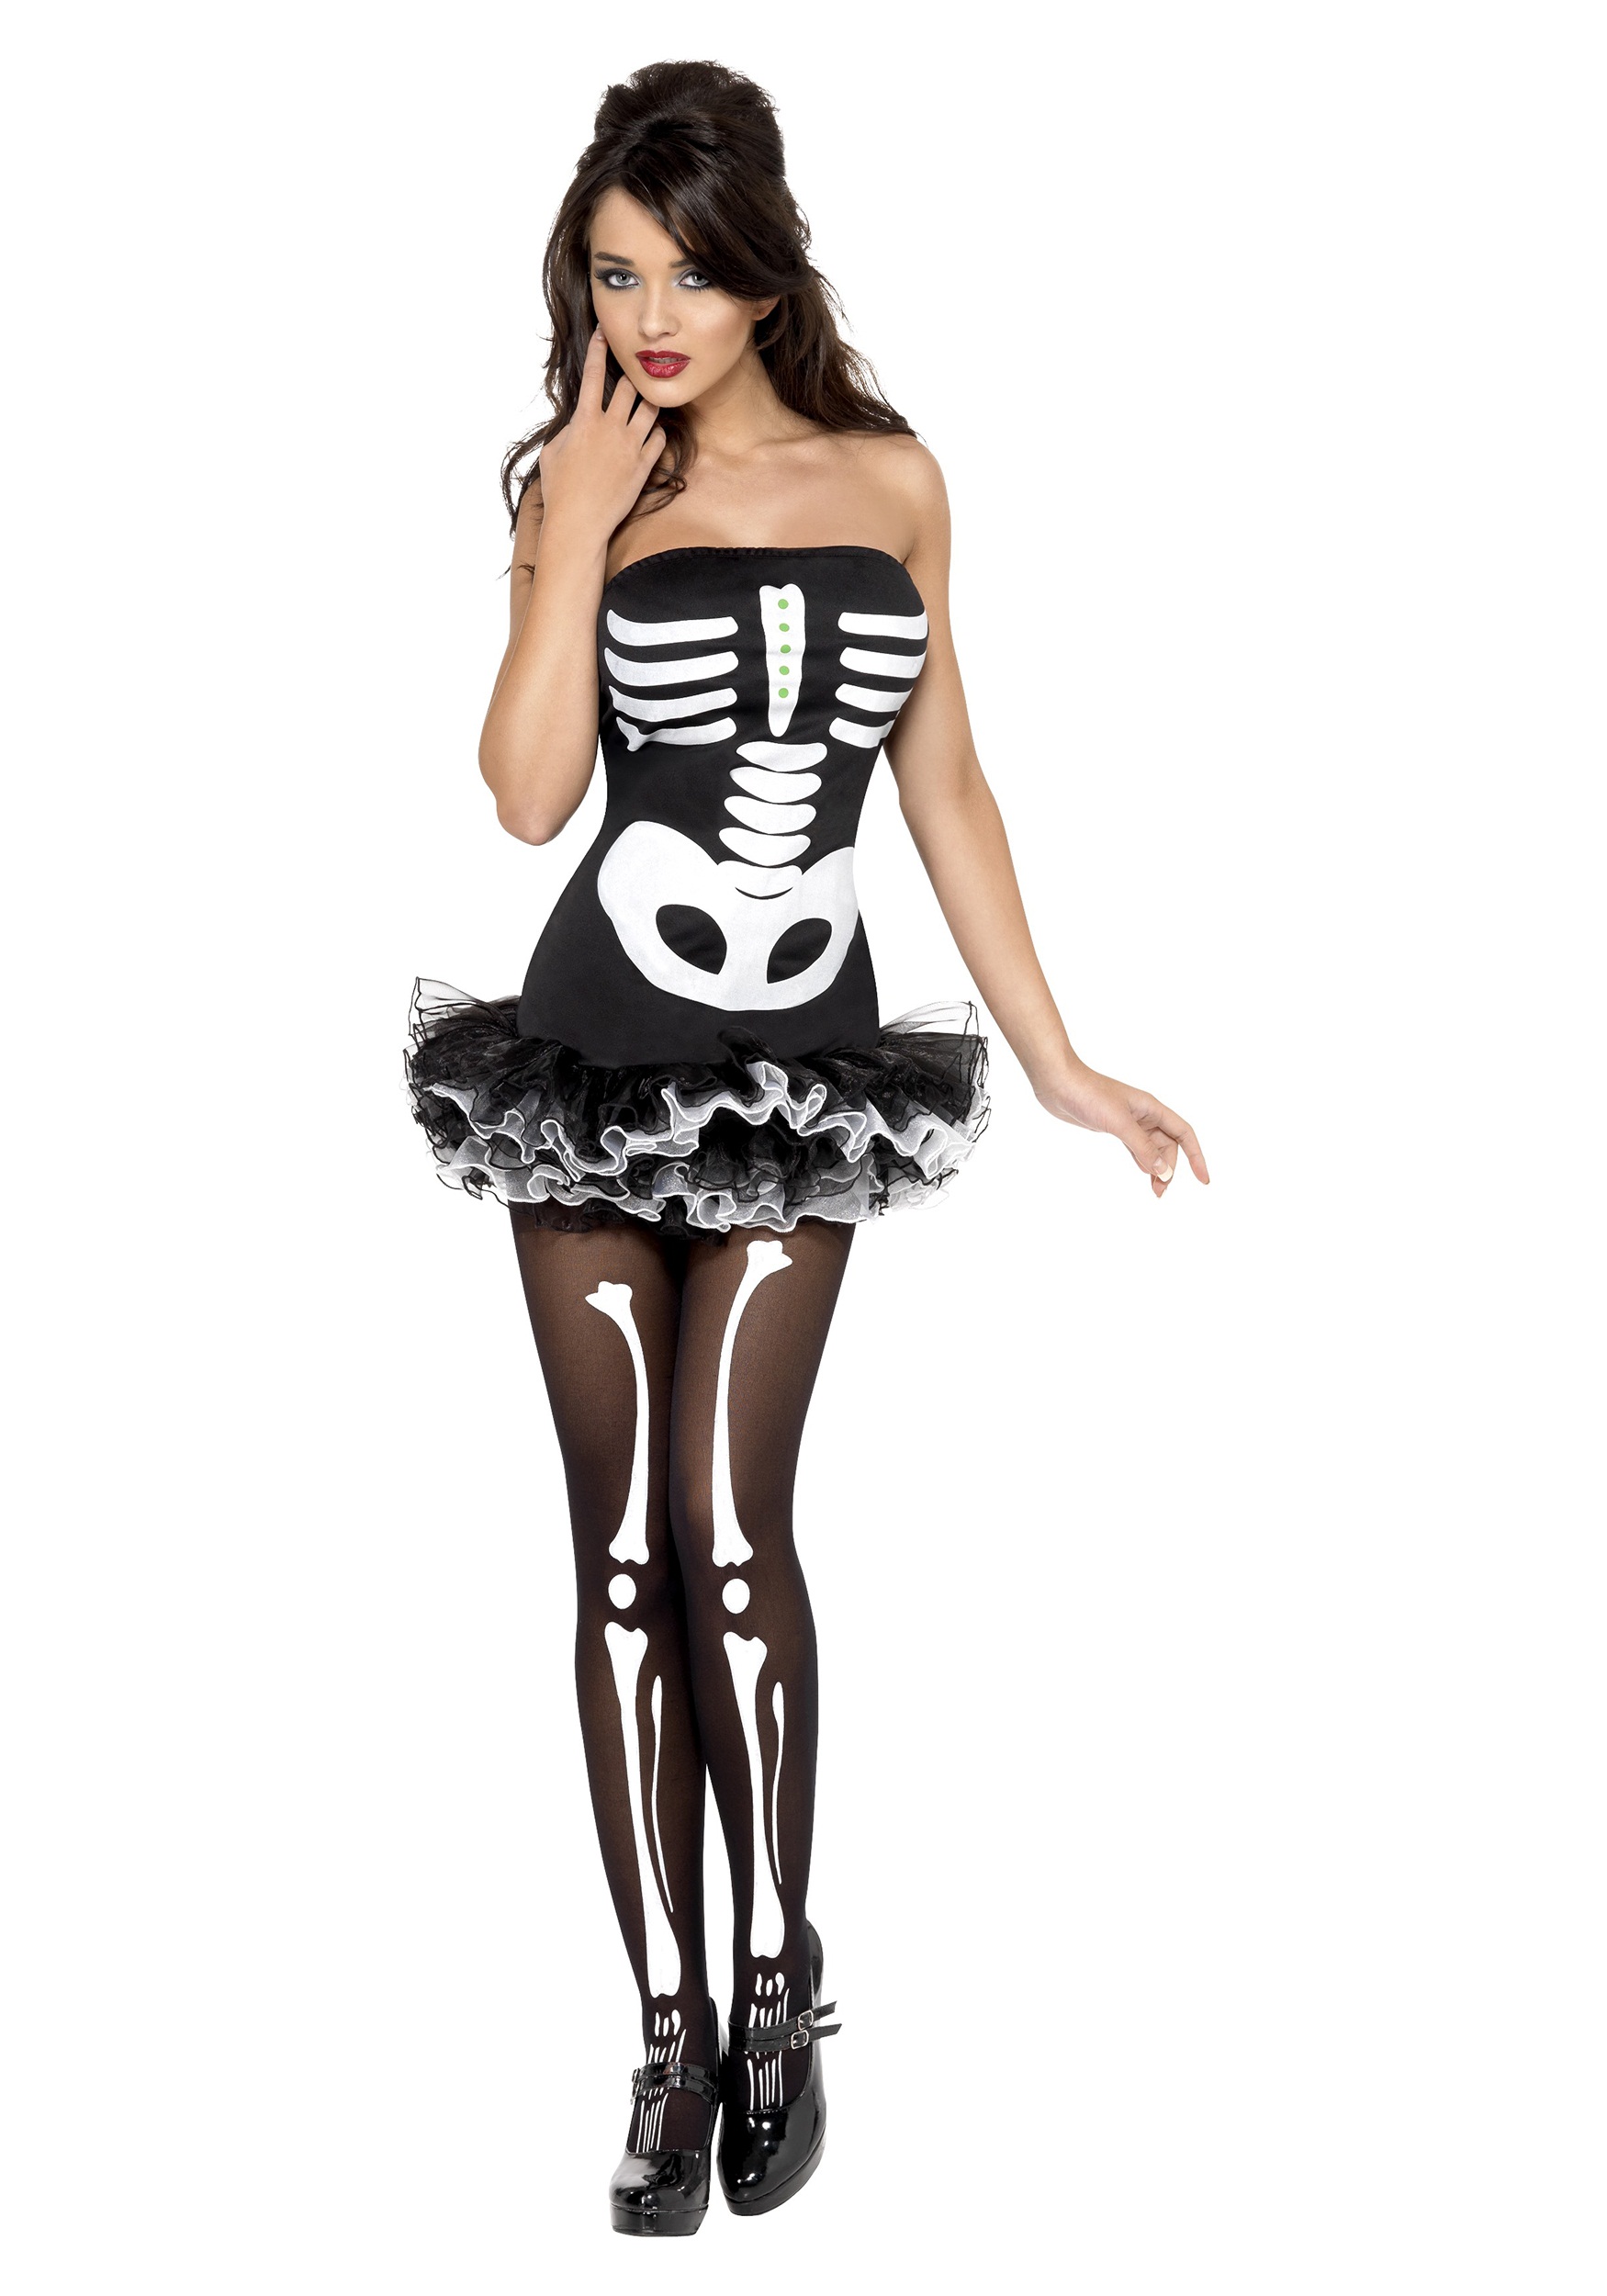 adult skeleton dress costume